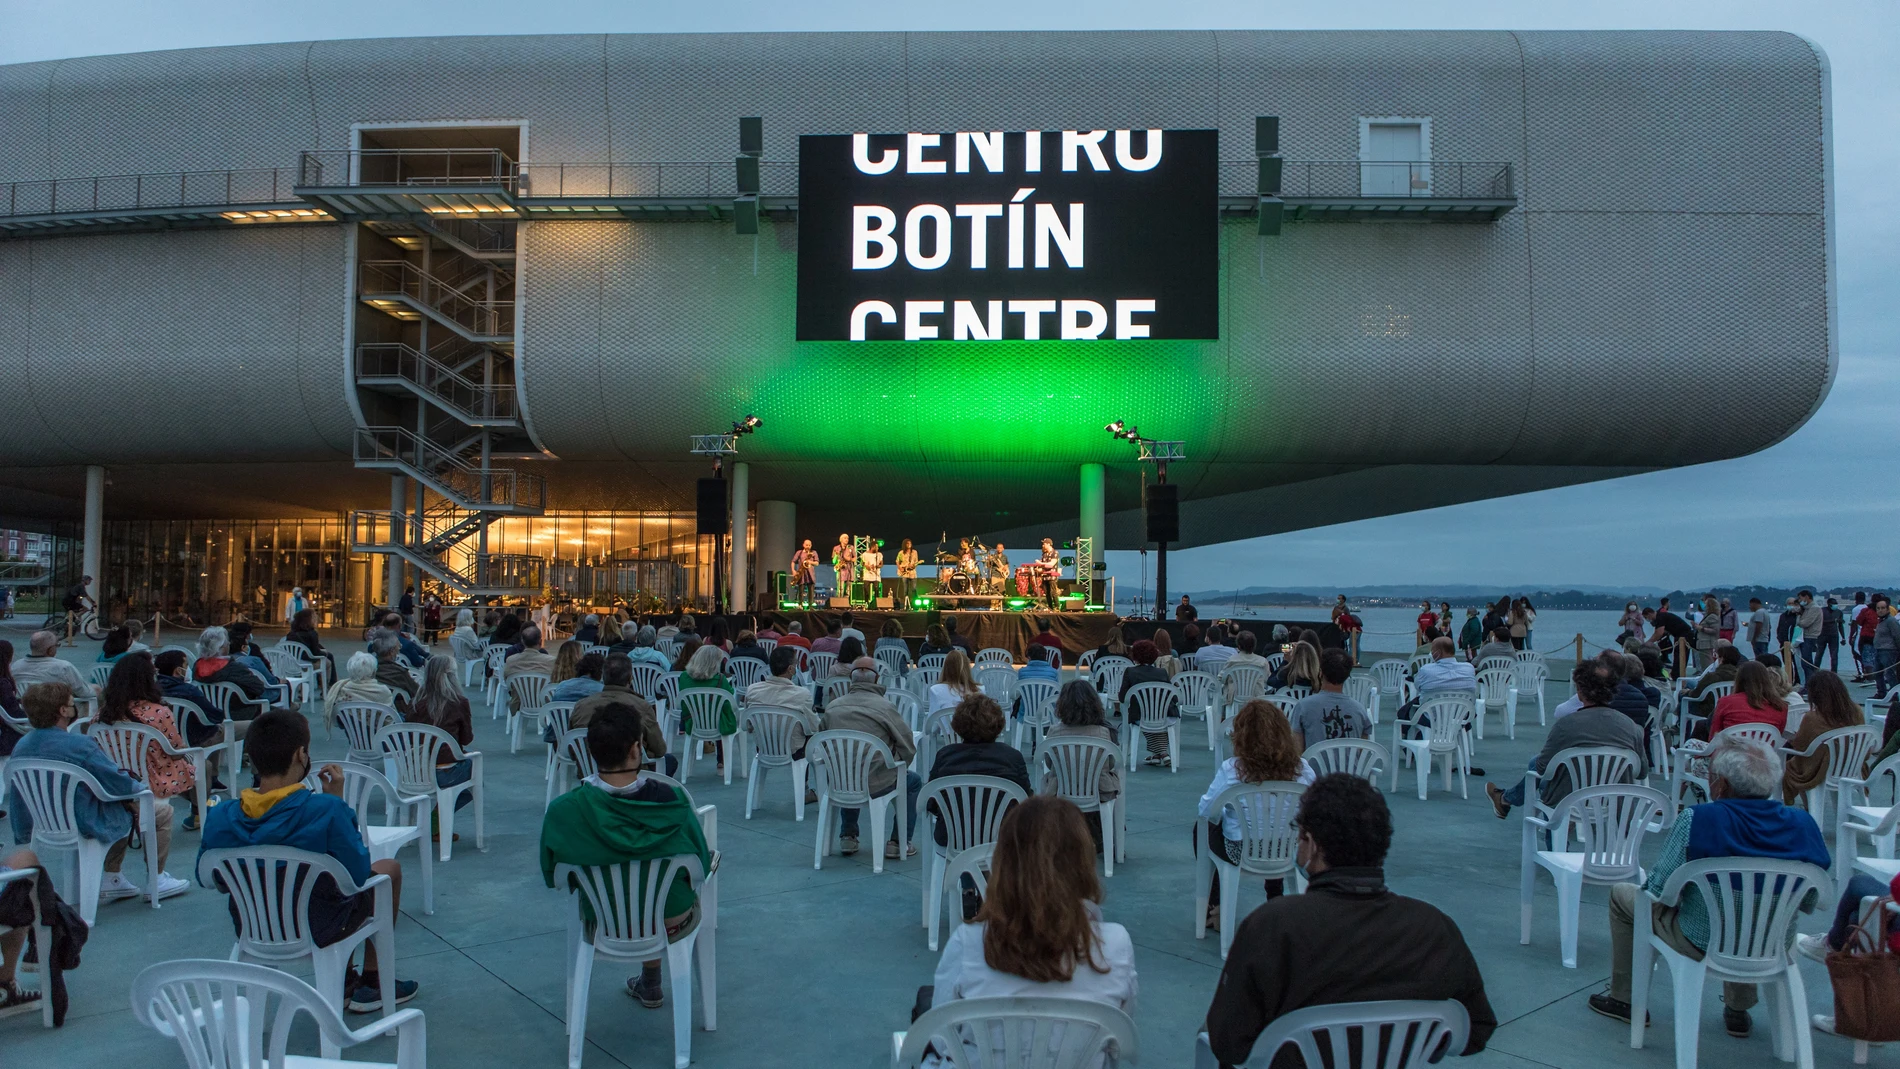 Además de sus exposiciones, el Centro Botín organiza también proyecciones en su pantalla exterior